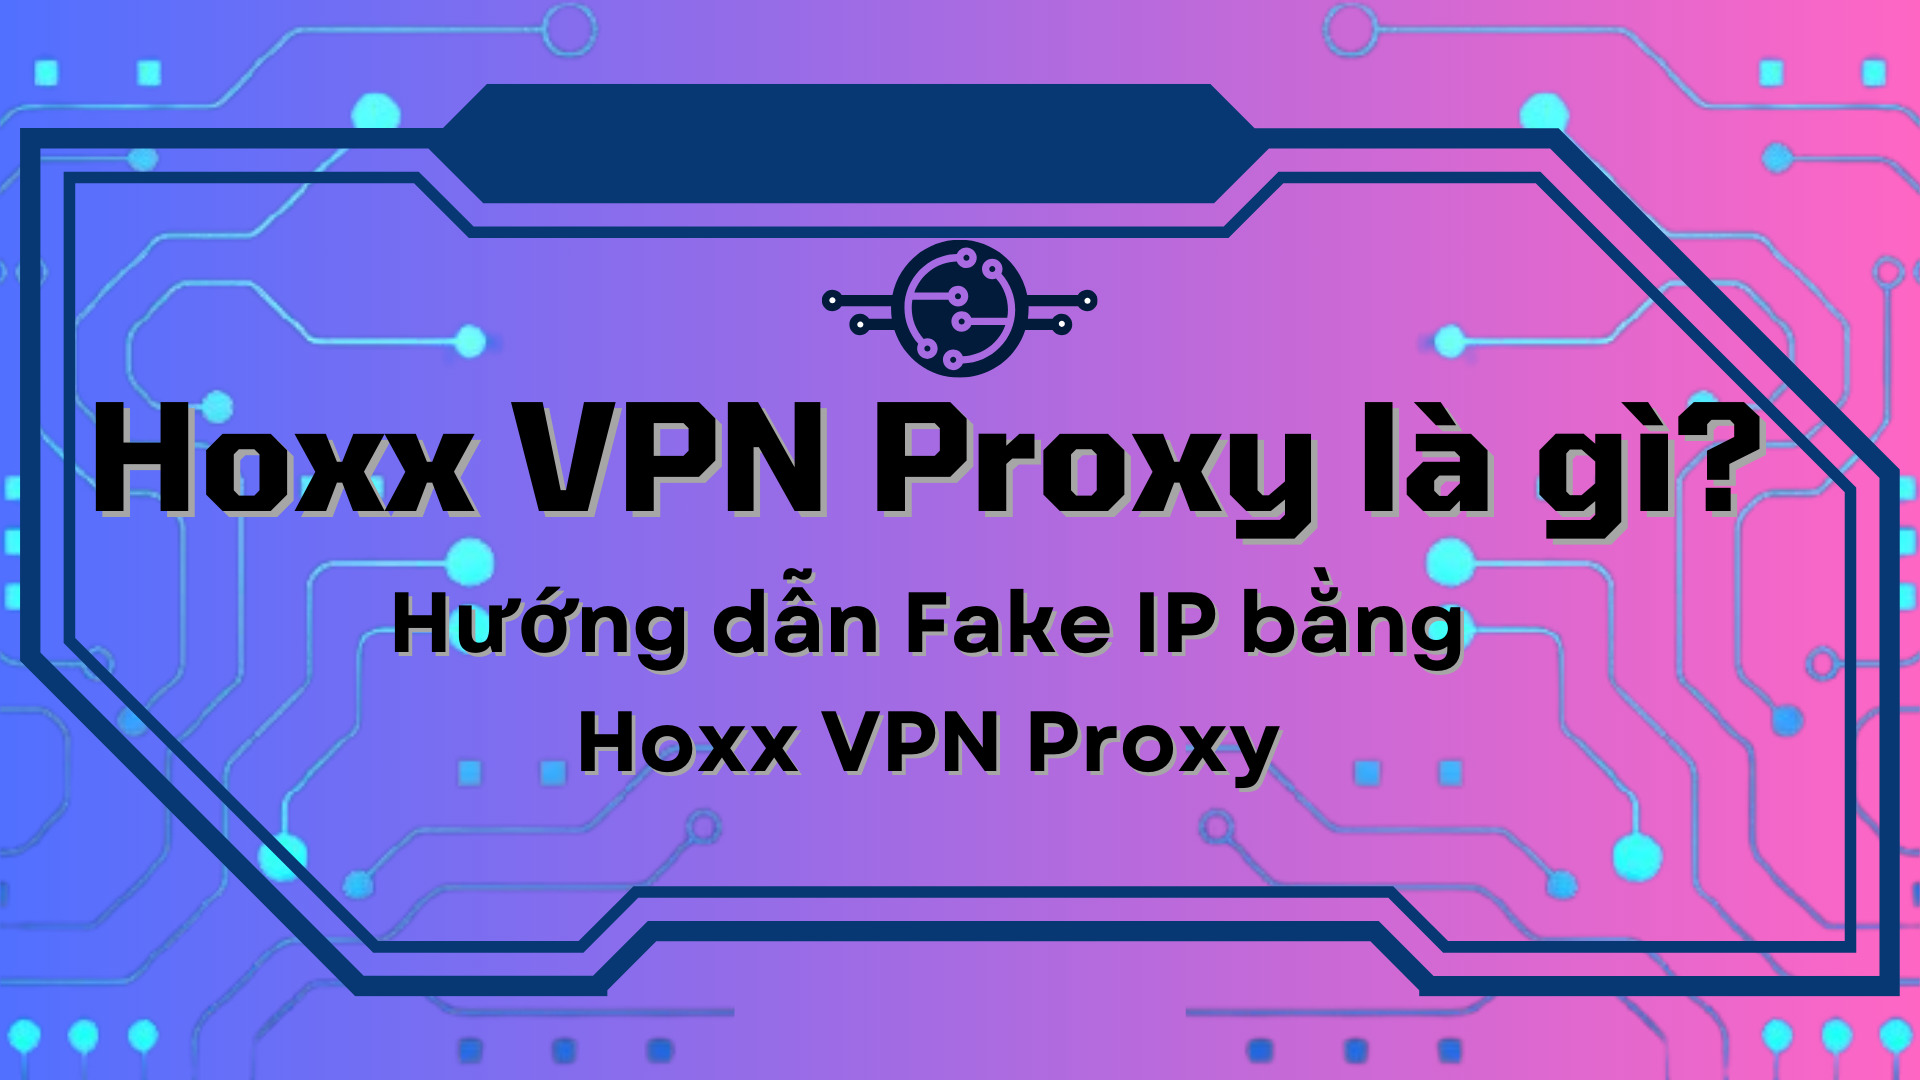 Hoxx VPN Proxy là gì? Hướng dẫn Fake IP bằng Hoxx VPN Proxy